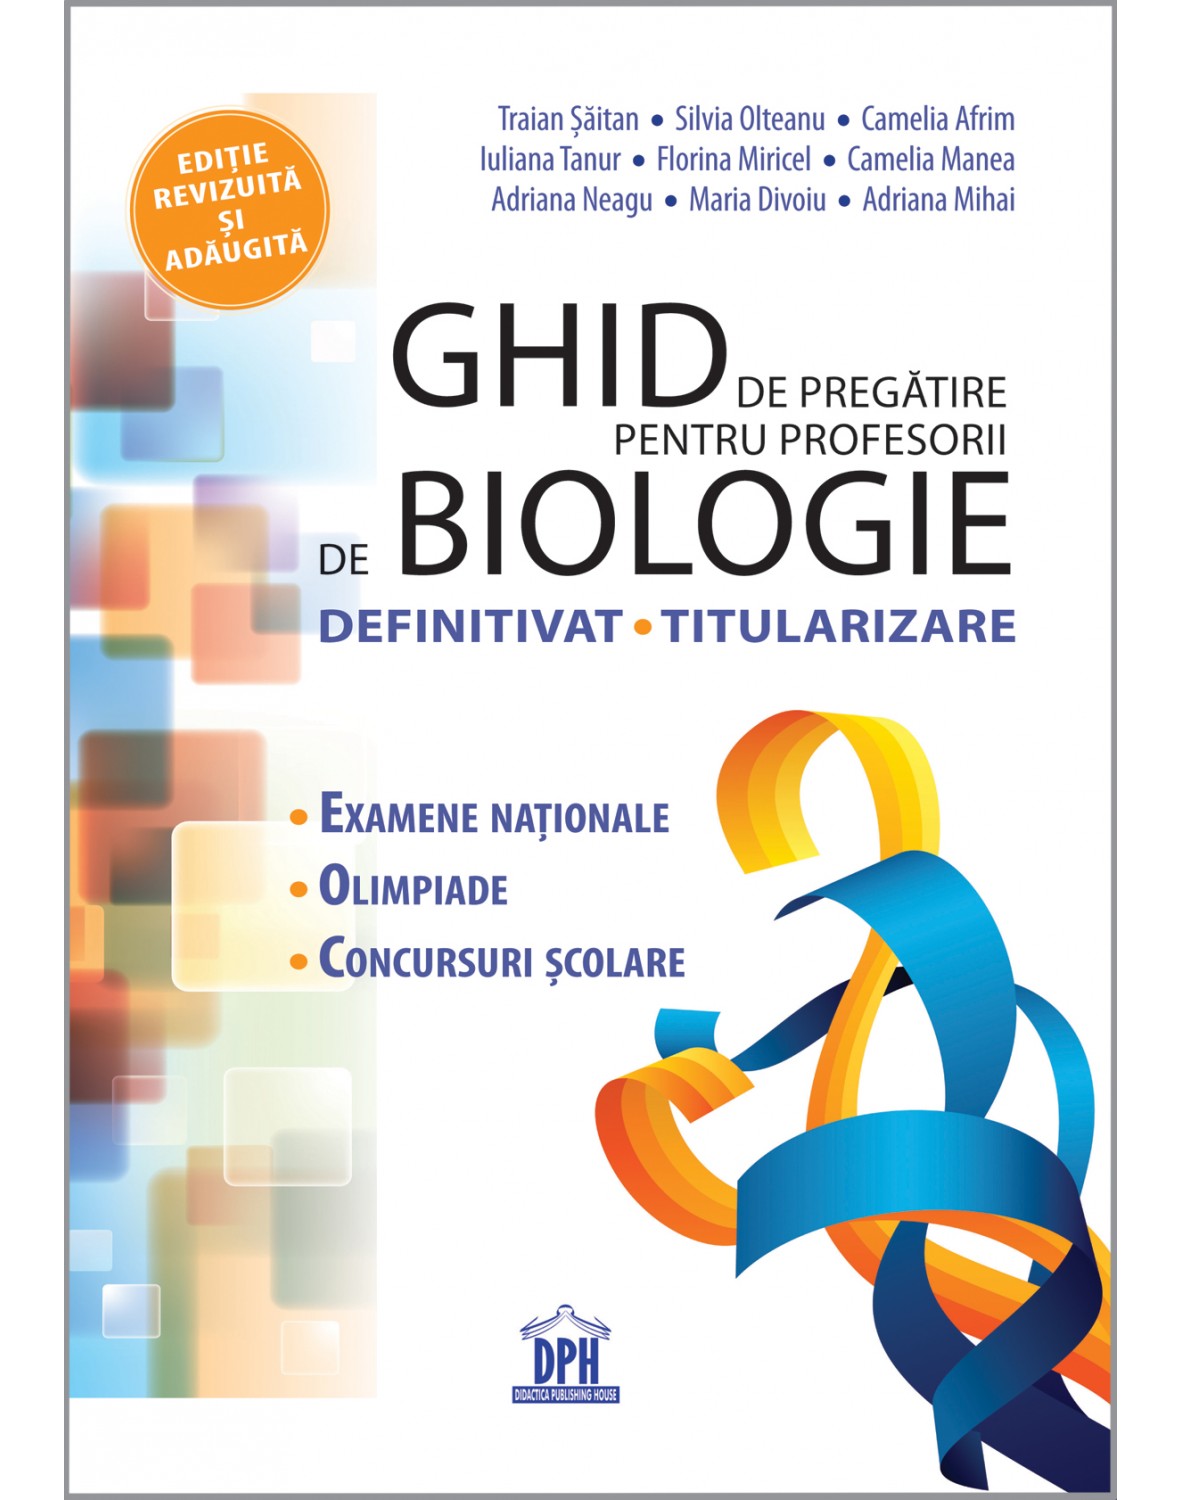 Ghid pregatire pentru profesorii de Biologie | Traian Saitan, Silvia Olteanu, Elena Camelia Afrim